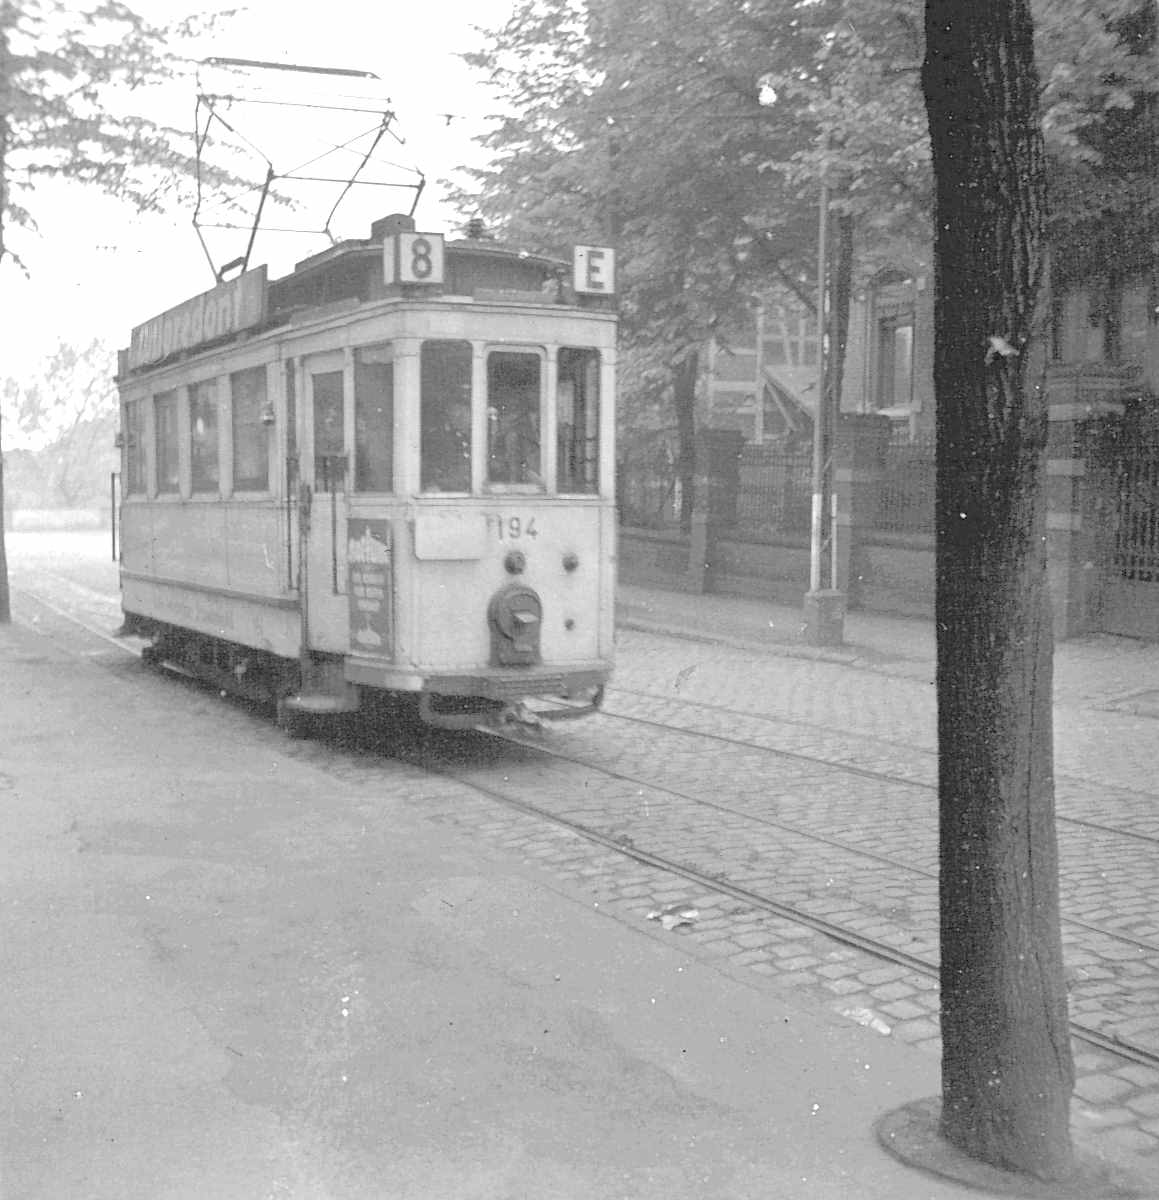 WuppertalerStrassenbahn/11_88_Tram_Wagen194_Linie8_Einsatzwagen_mit_Scheinwerfer-Verdunkelung_um_1940